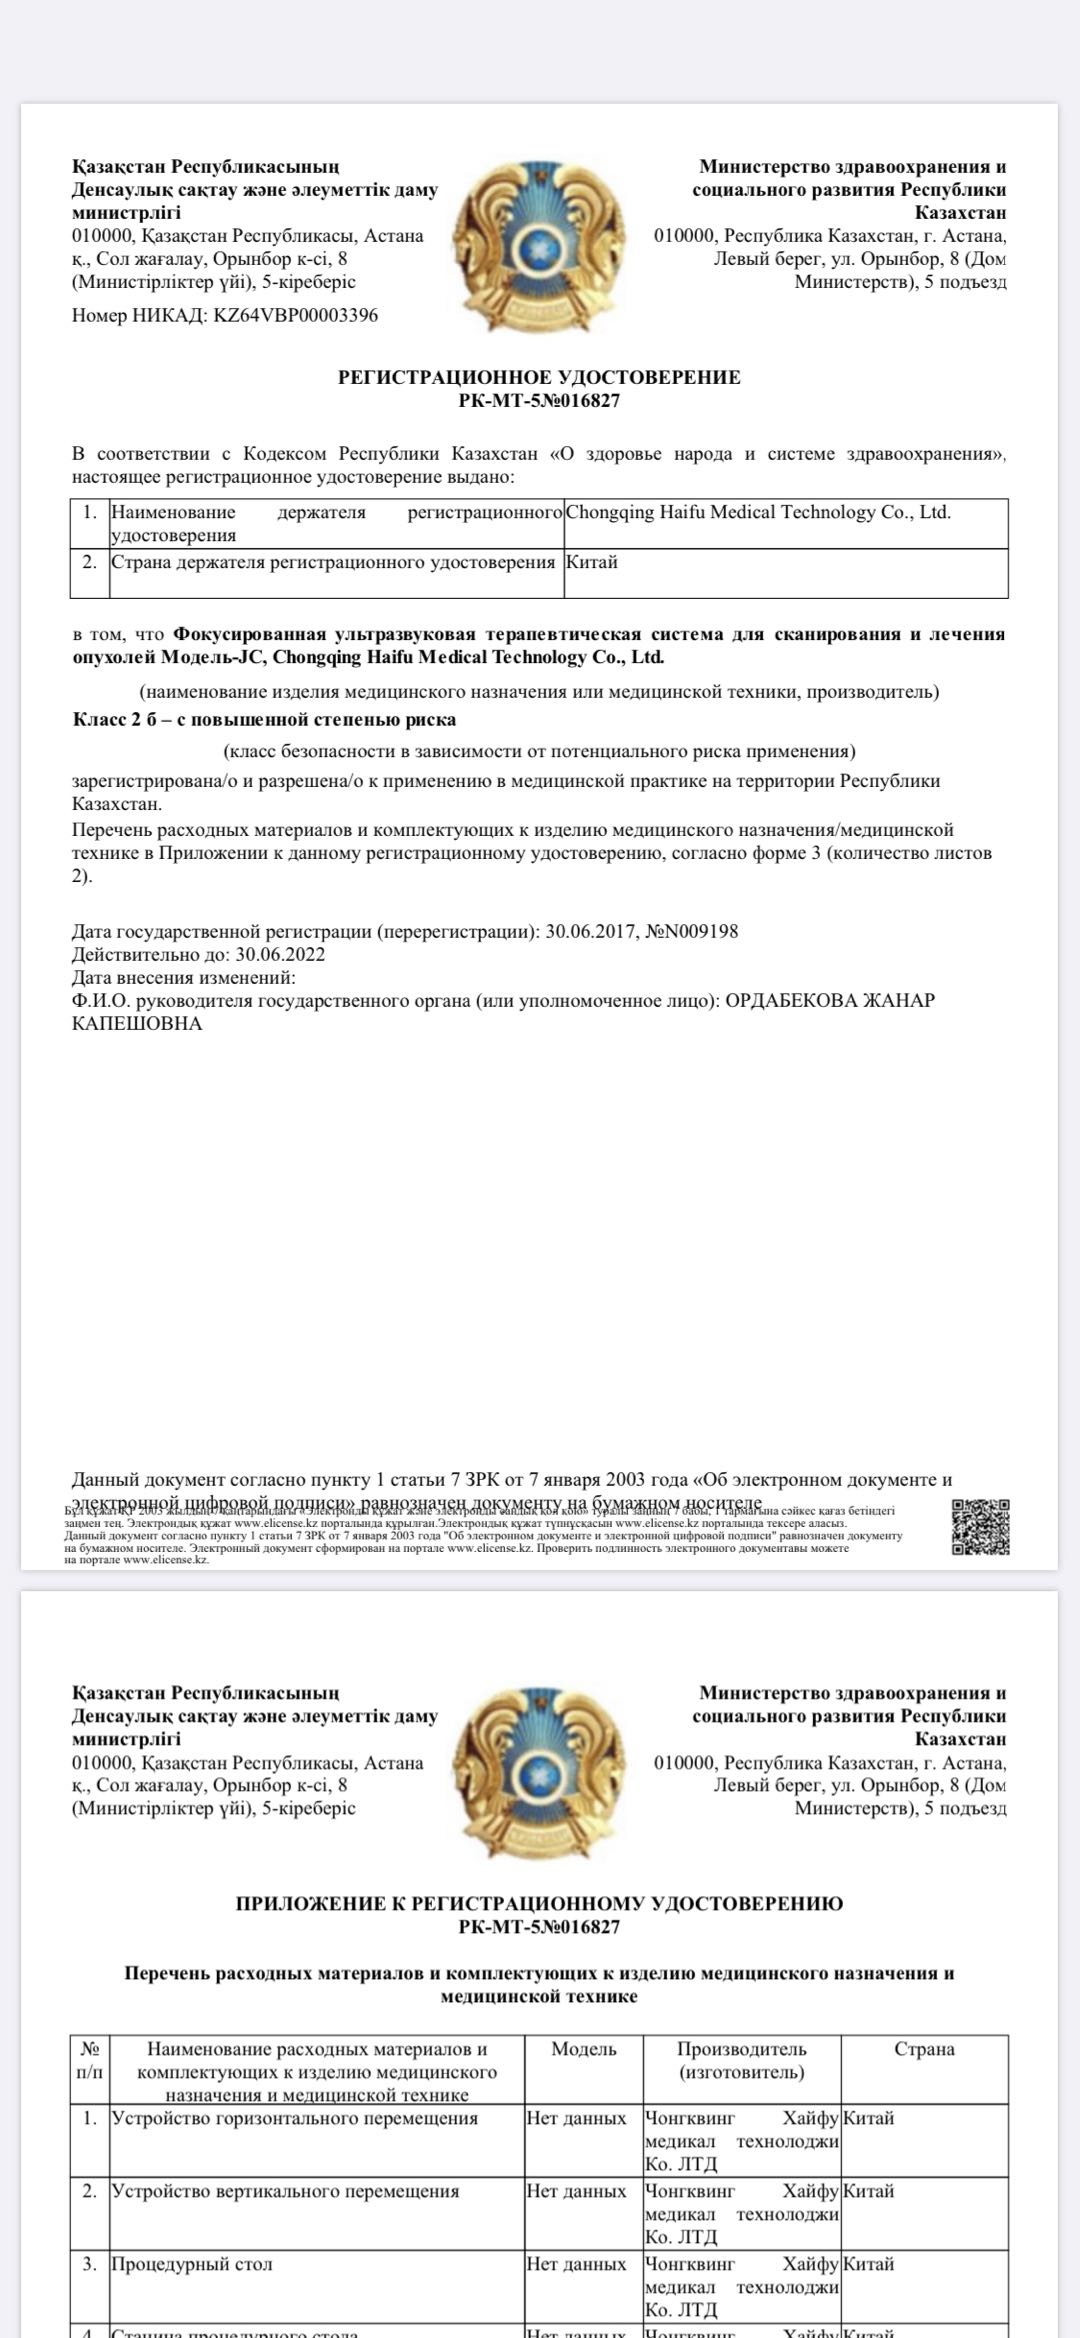 Certification of Kazakhstan